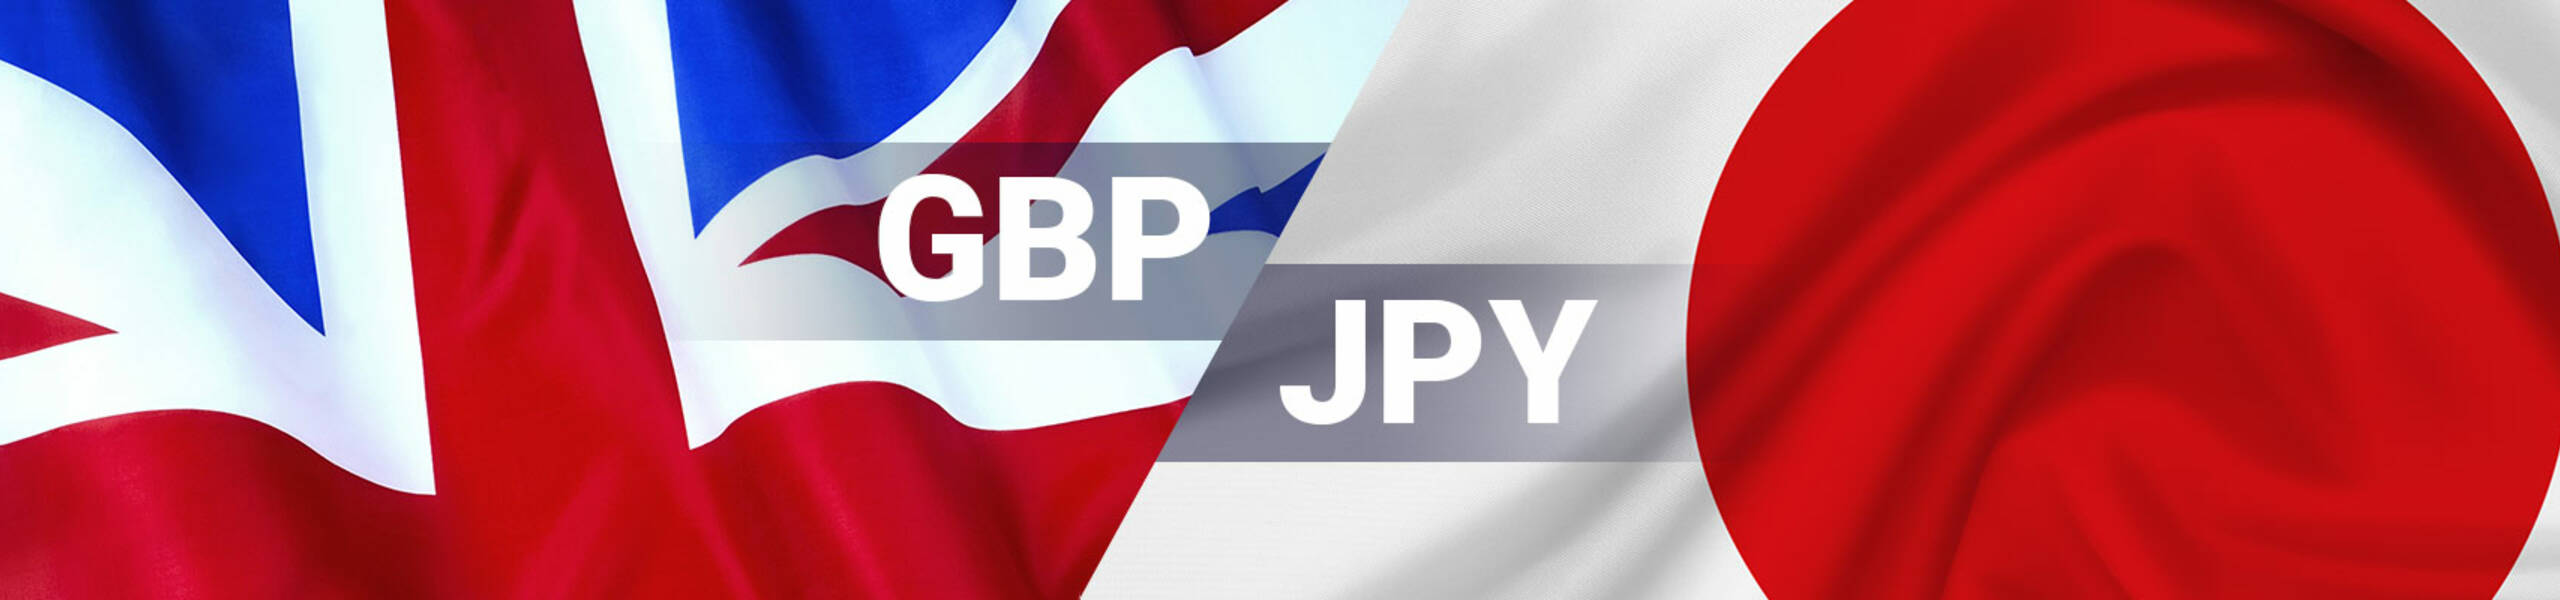 GBP/JPY テクニカル分析 2018/03/28